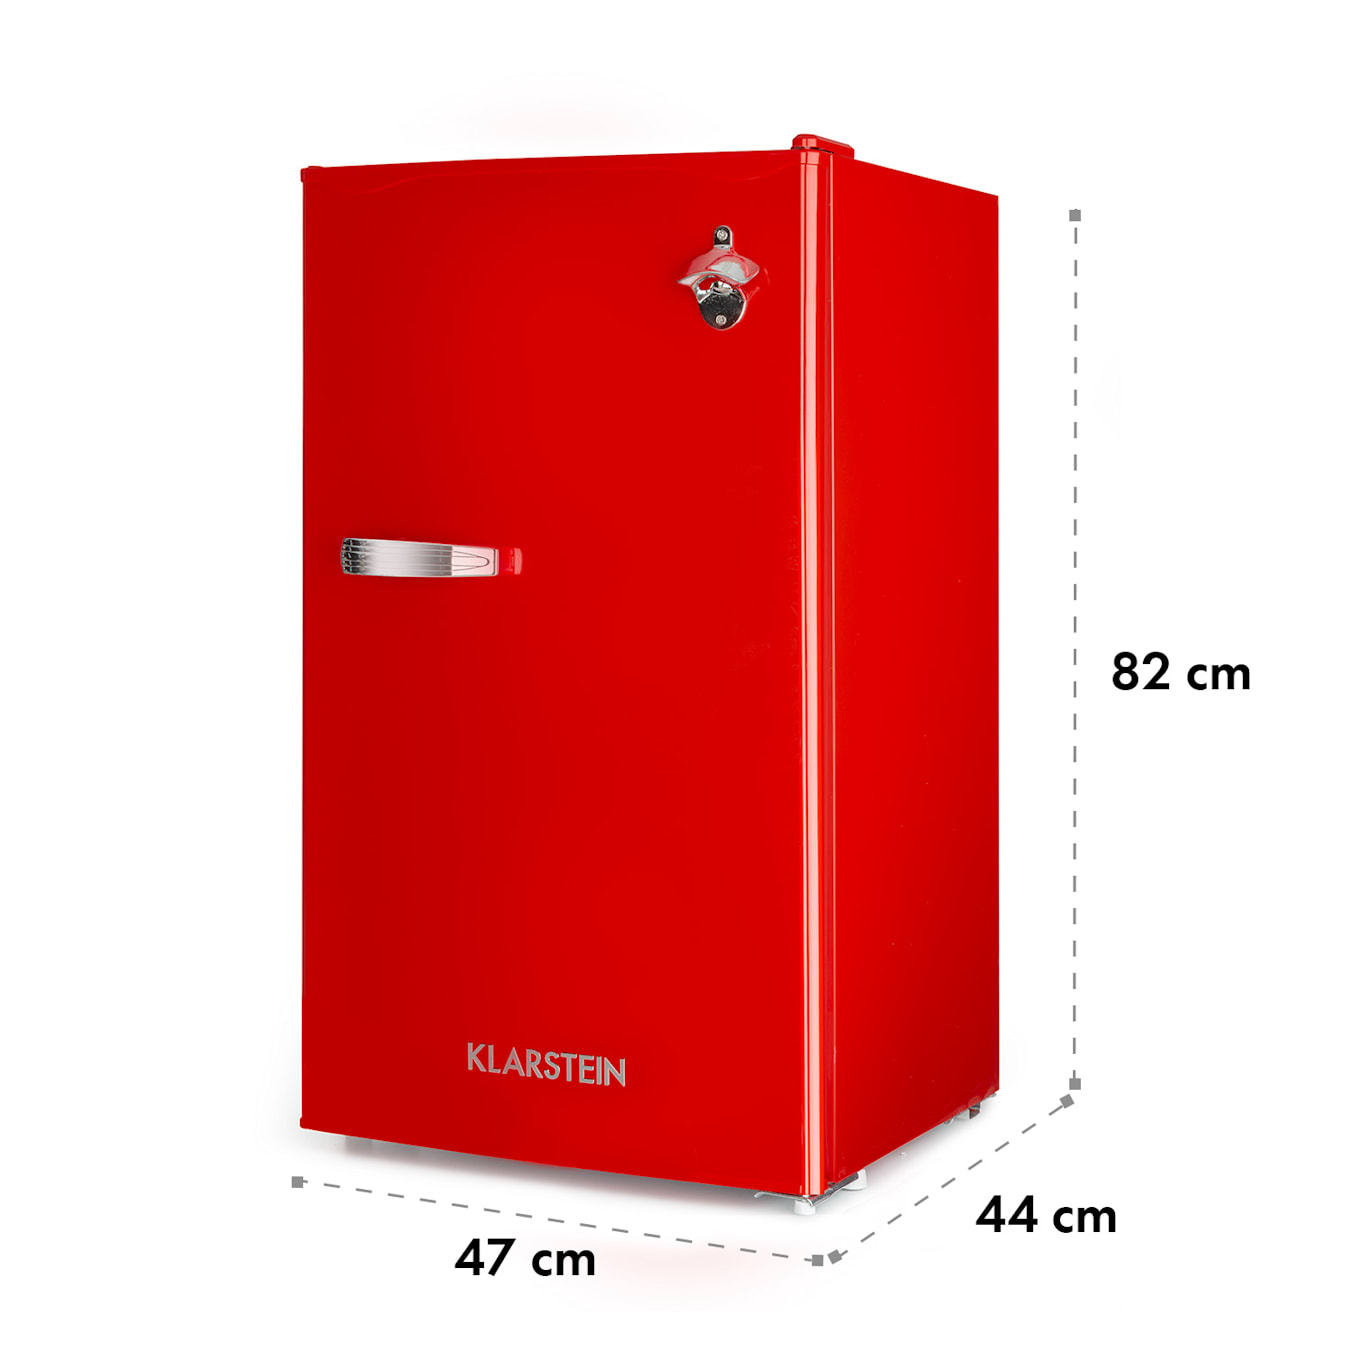 Kühlschrank mit temperaturfühler und alarm zur gewährleistung der  lebensmittelsicherheit, geschaffen mit generativer ki